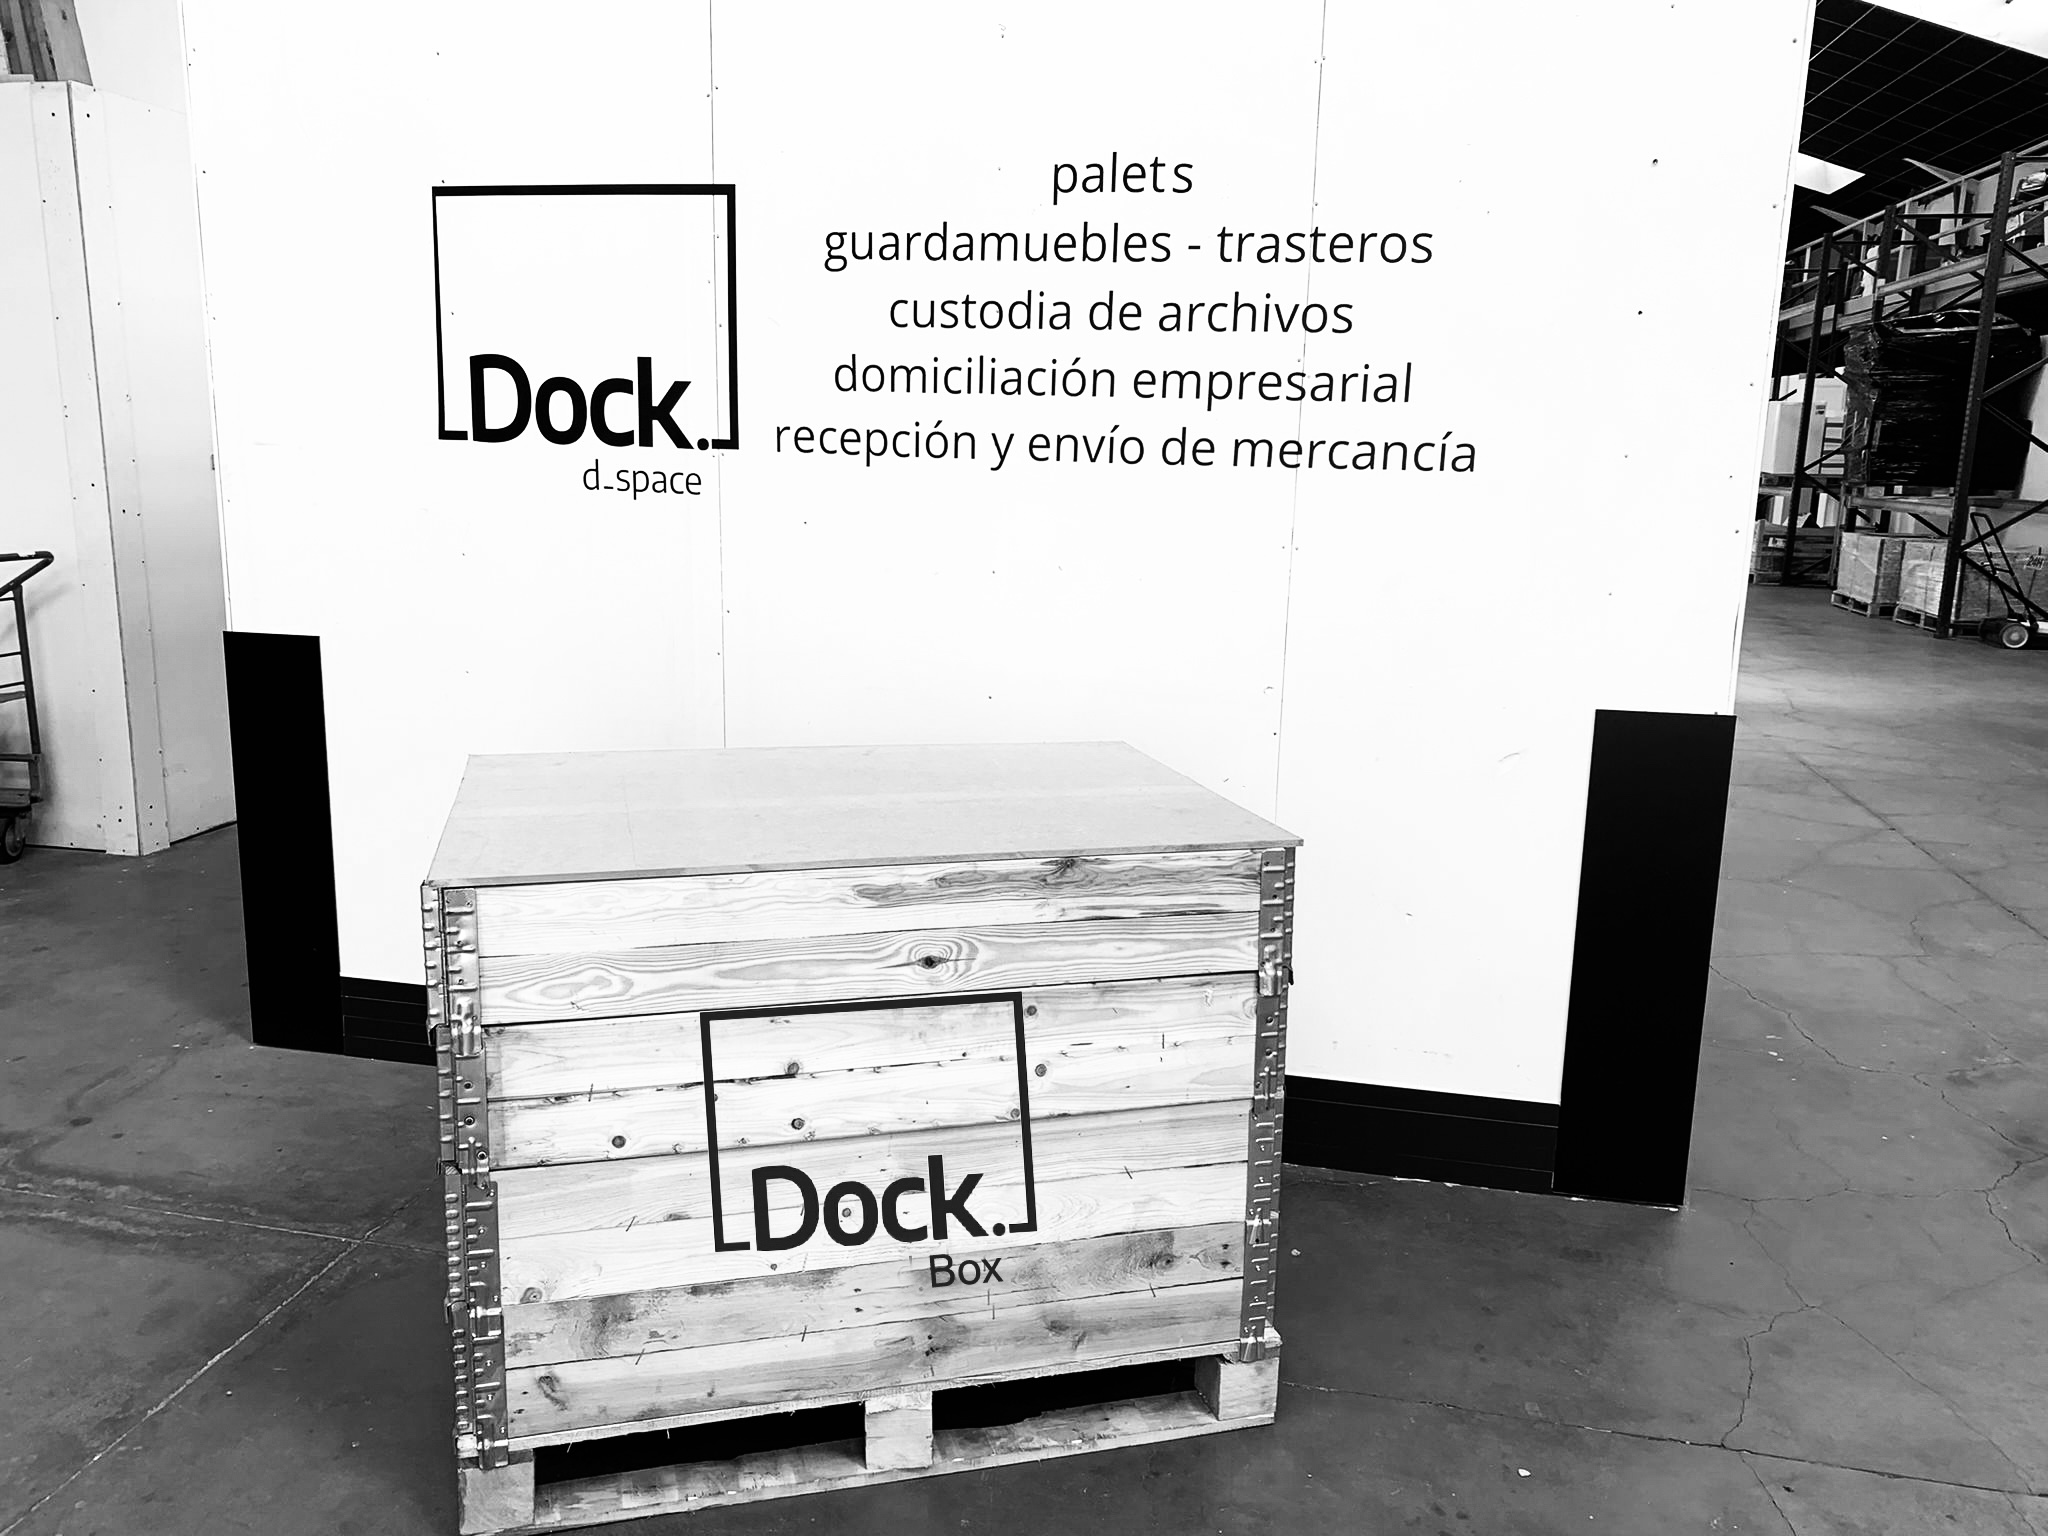 Dock Box la nueva solución de almacenaje de Dock d_space